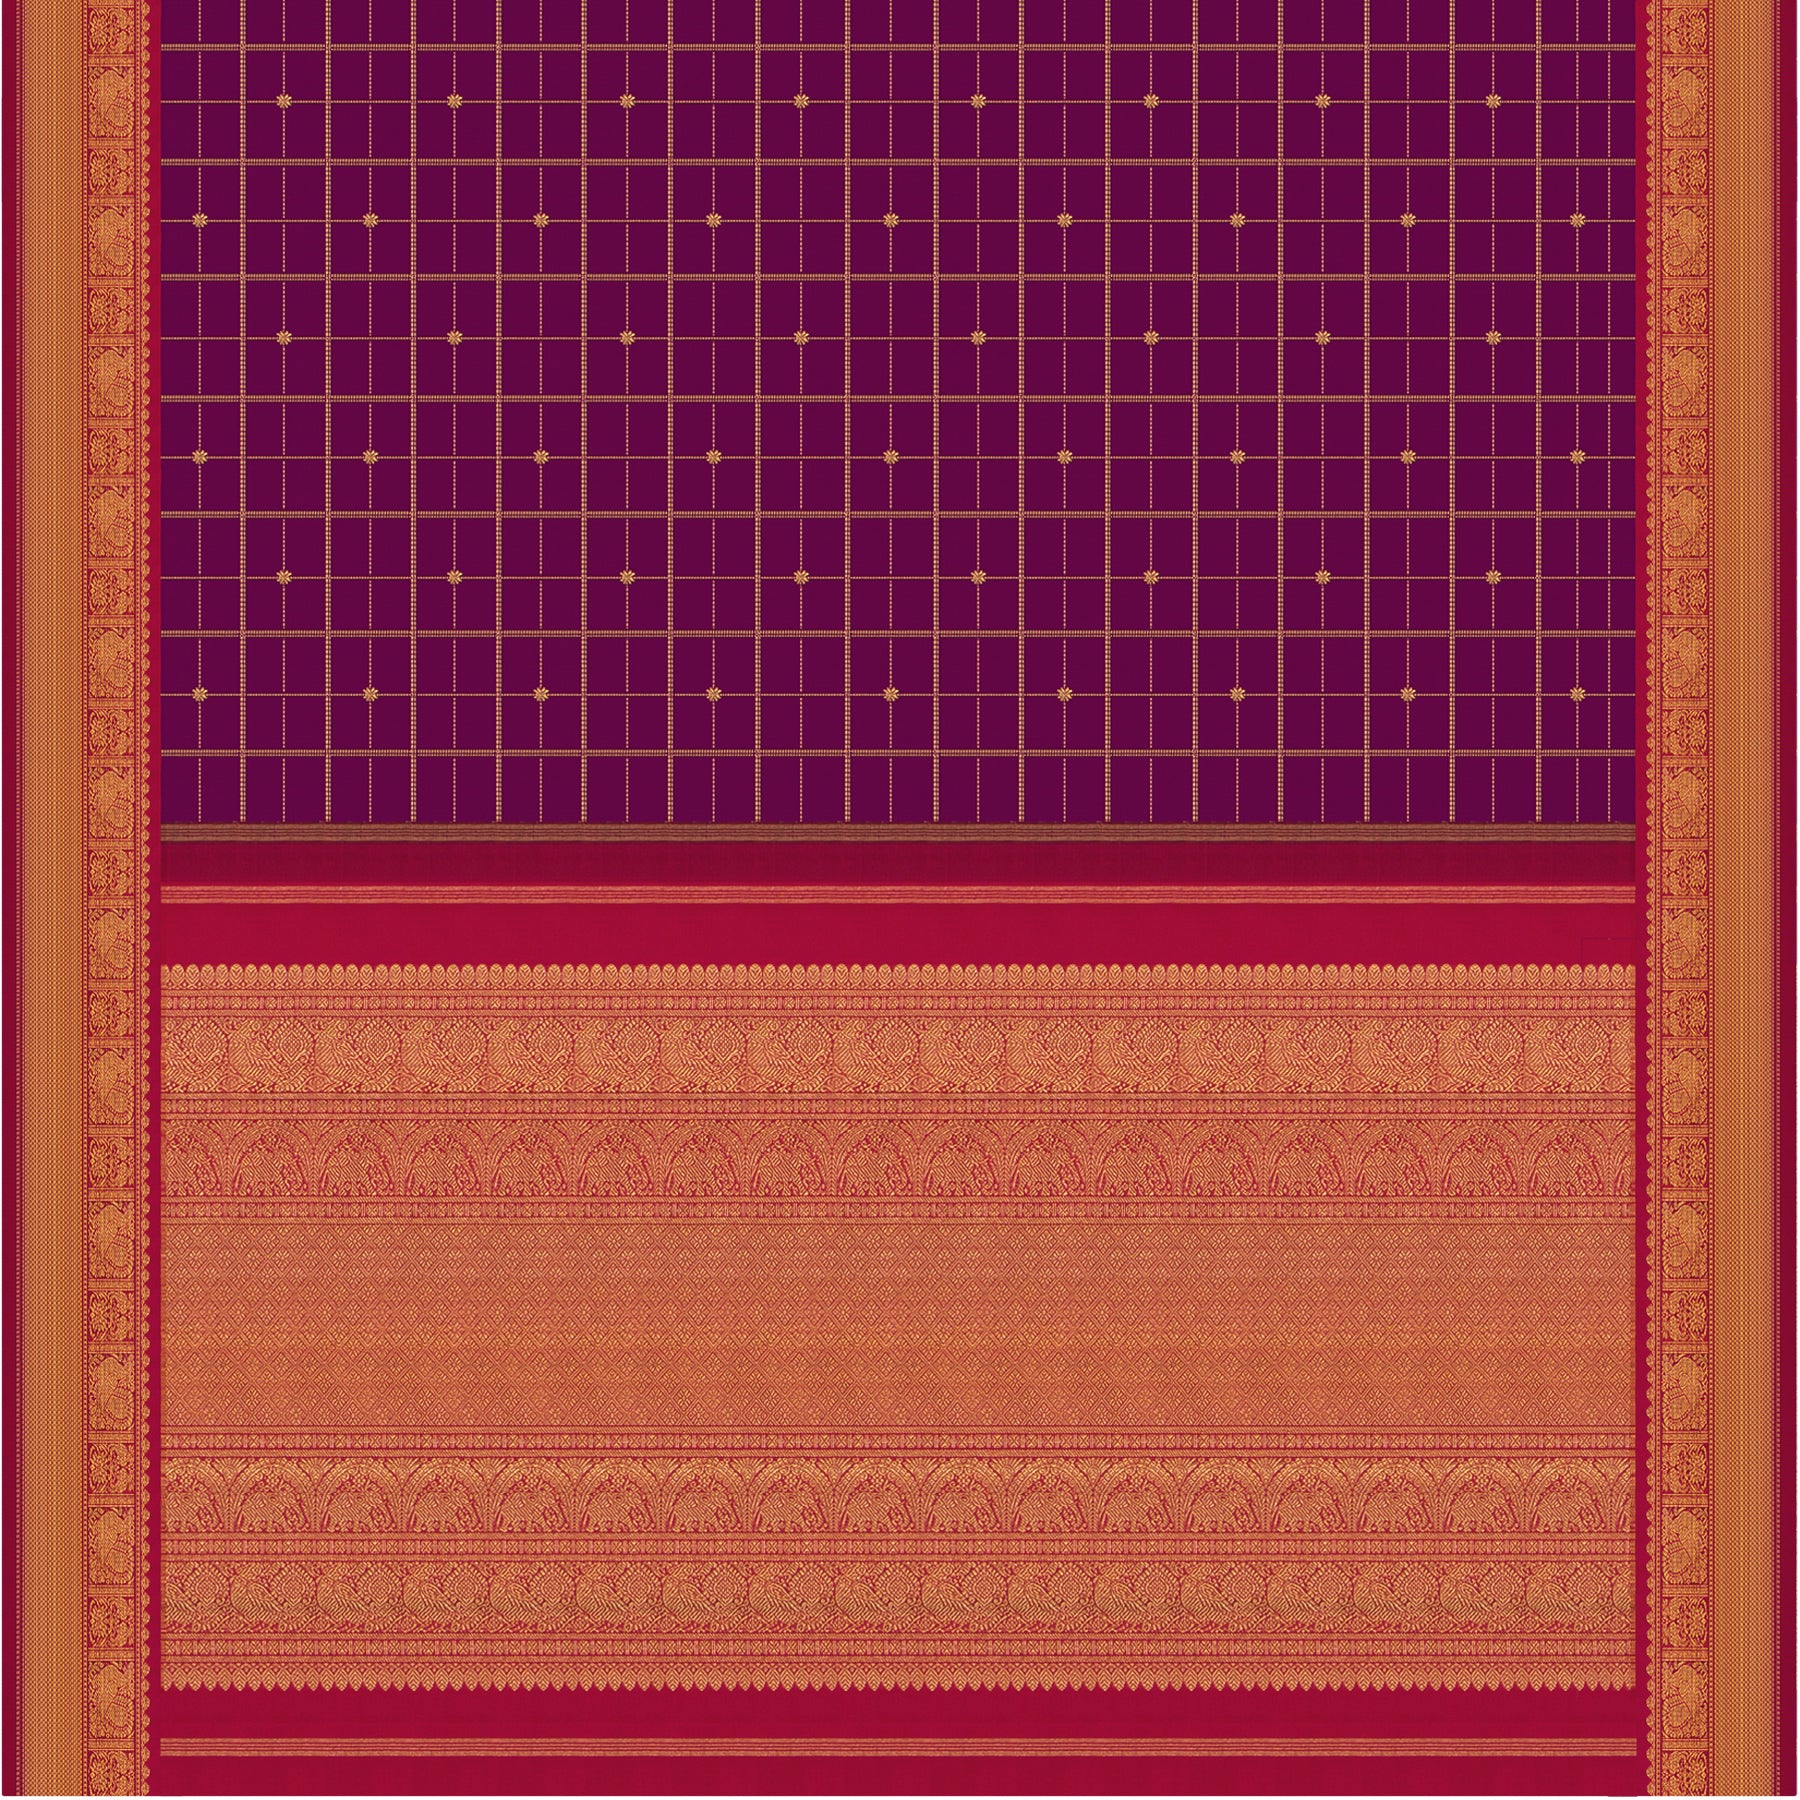 Kanakavalli Kanjivaram Silk Sari 23-595-HS001-06650 - Full View